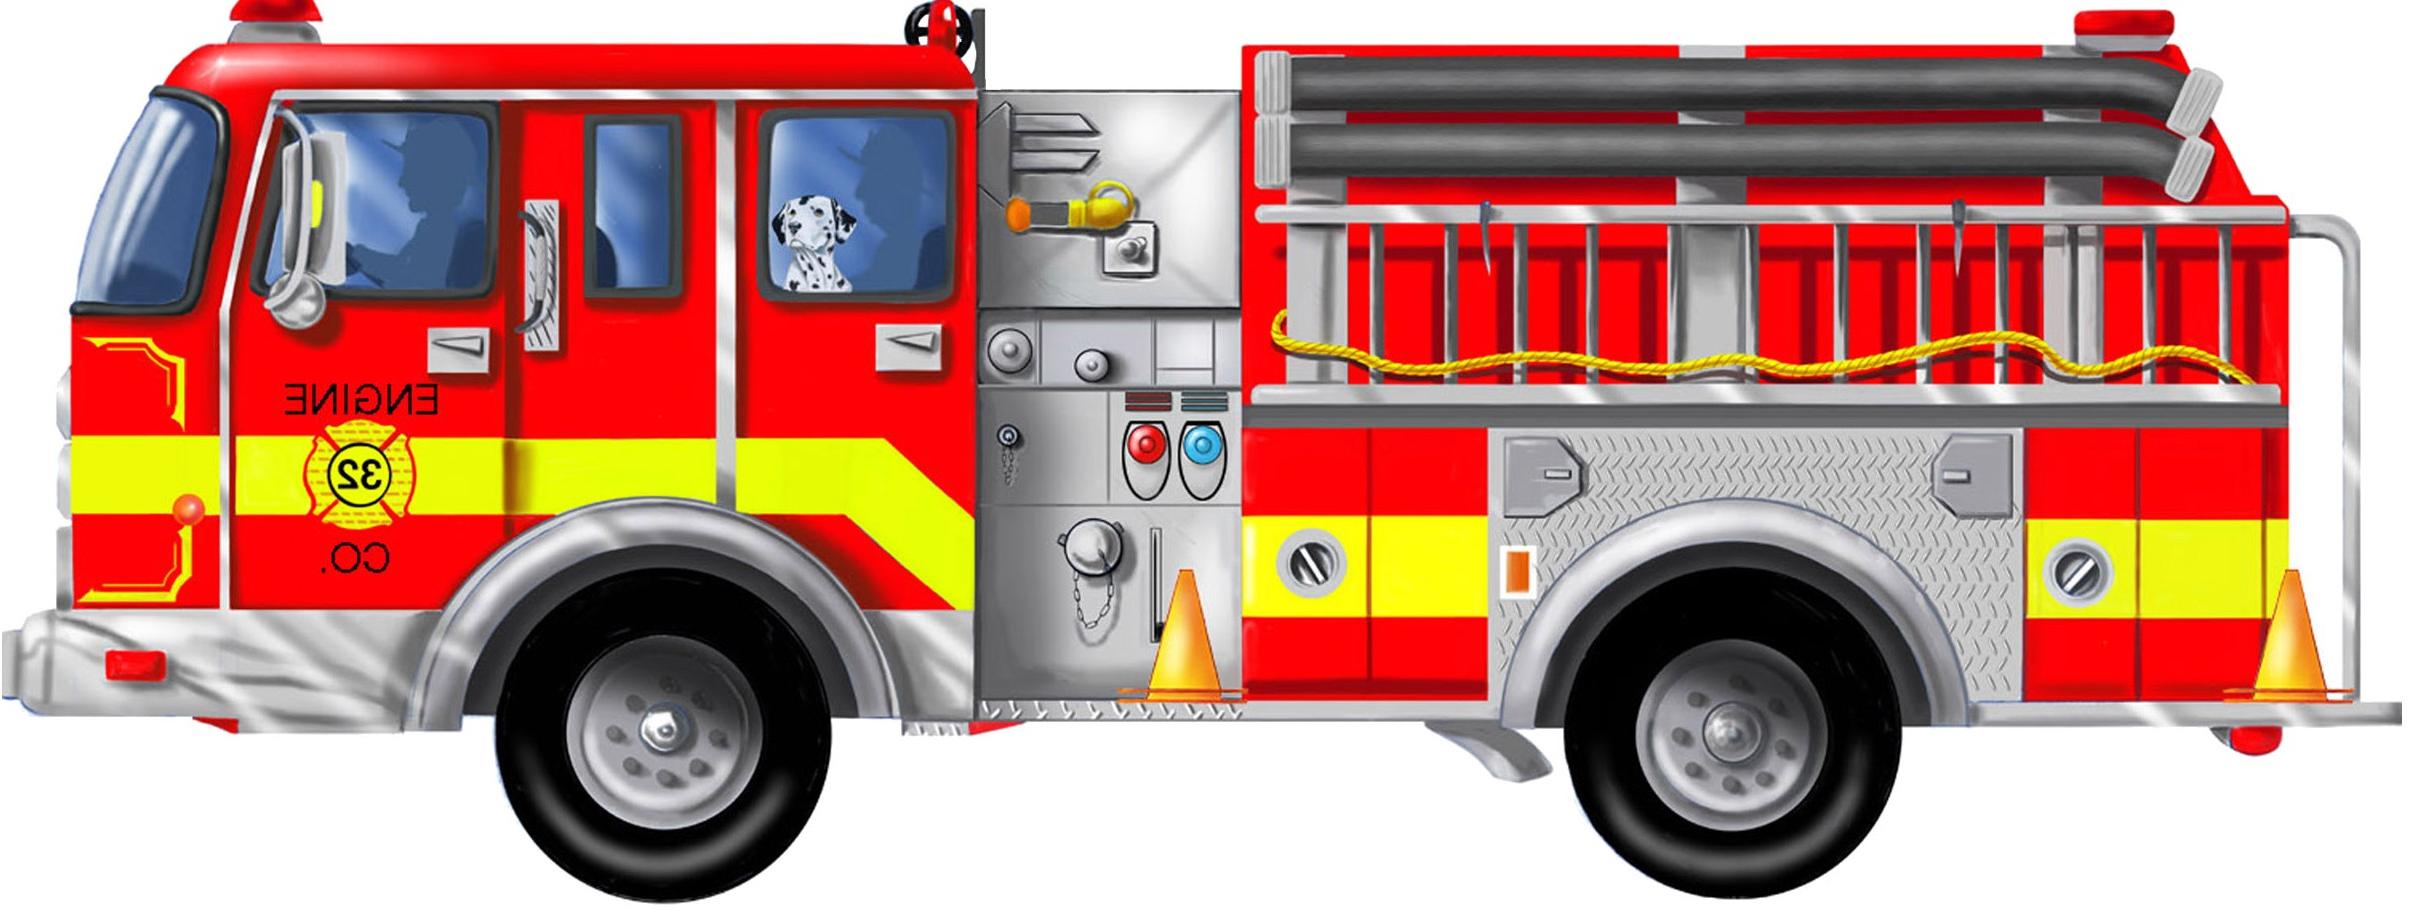 Fire Truck Cartoon Clip Art